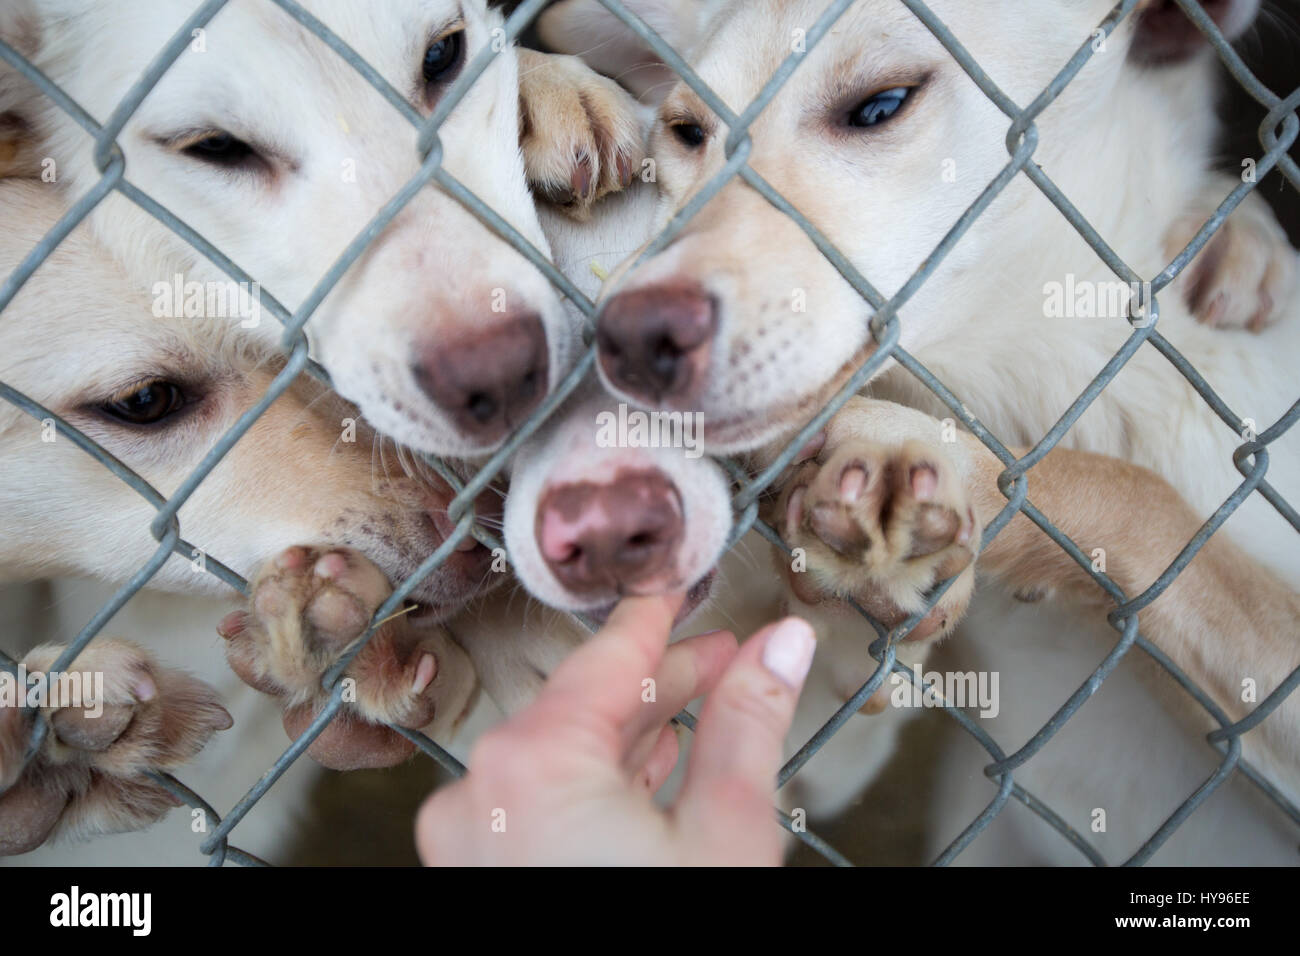 Niedliche Gruppe von 4 aufgeregten weißen Schlittenhunden hinter einem Zaun mit hochgezogenen Pfoten und Nasen durch den Zaun schnüffeln an der Hand einer Person Stockfoto